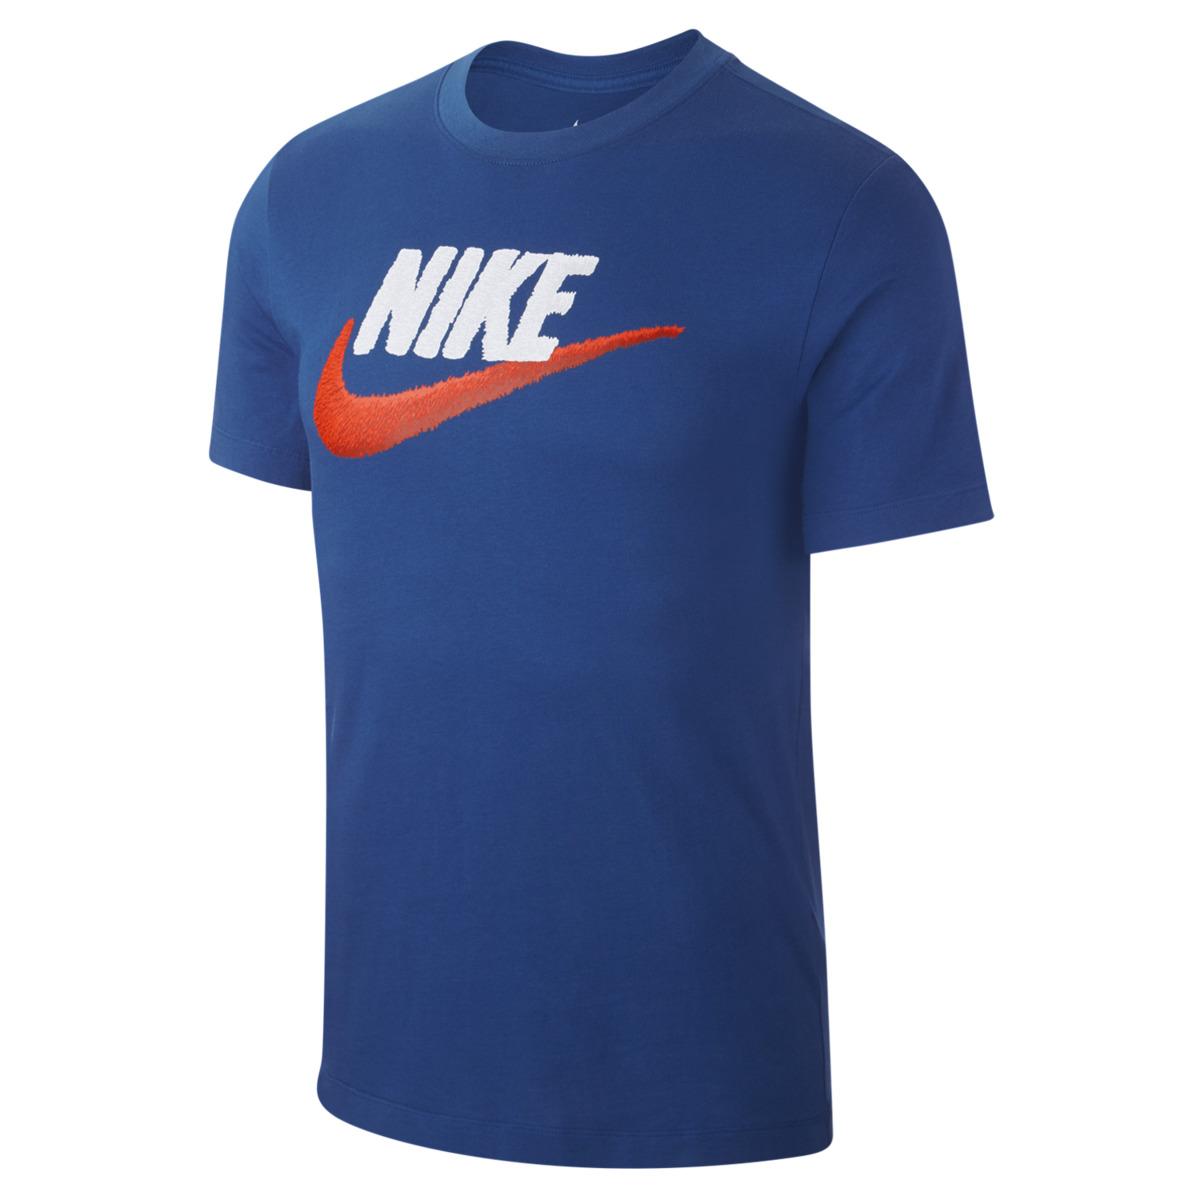 Nike Cotton Sportswear T-shirt in Blue for Men - Lyst